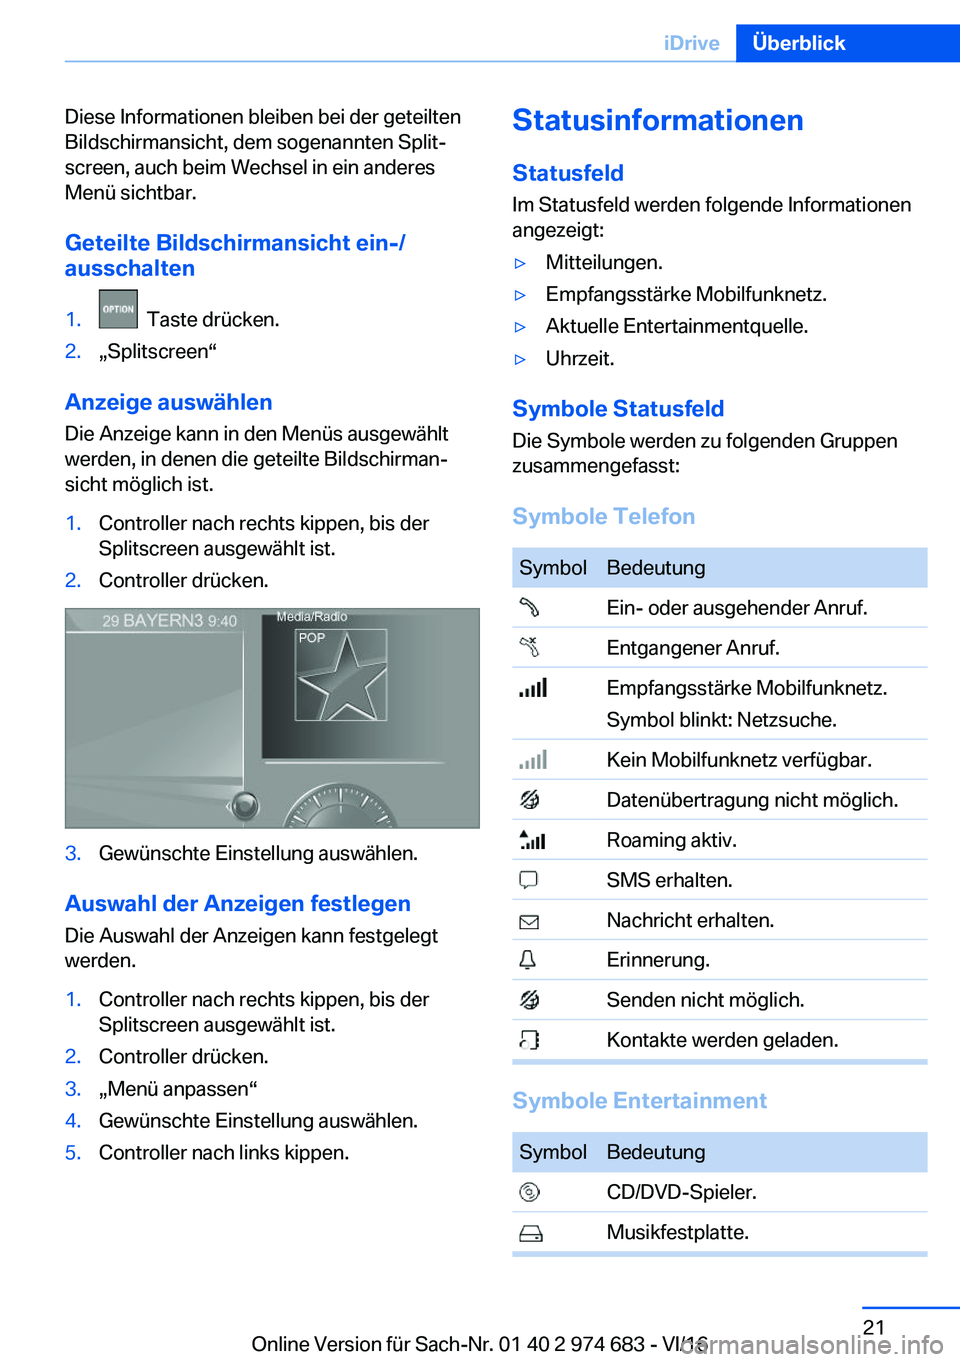 BMW M2 2017  Betriebsanleitungen (in German) �D�i�e�s�e� �I�n�f�o�r�m�a�t�i�o�n�e�n� �b�l�e�i�b�e�n� �b�e�i� �d�e�r� �g�e�t�e�i�l�t�e�n�B�i�l�d�s�c�h�i�r�m�a�n�s�i�c�h�t�,� �d�e�m� �s�o�g�e�n�a�n�n�t�e�n� �S�p�l�i�tj�s�c�r�e�e�n�,� �a�u�c�h� �b